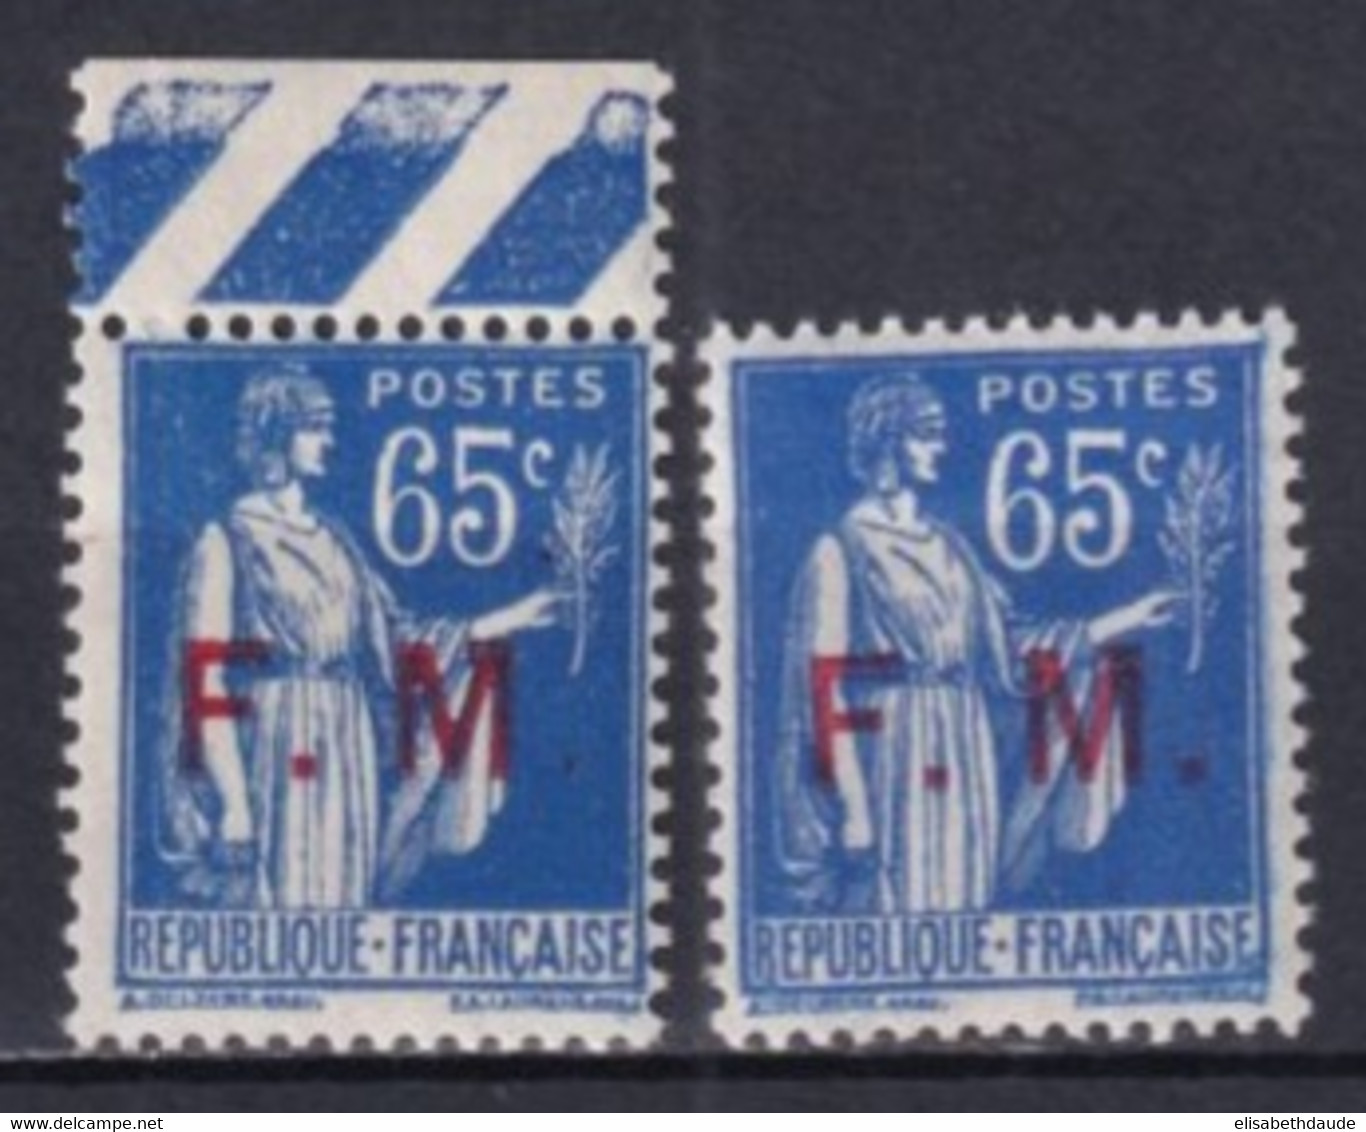 1937 - FRANCHISE MILITAIRE TYPE PAIX - YVERT N°8 + 8a (VARIETE SANS POINT APRES "M") ** MNH - COTE = 62.8 EUR. - Militärische Franchisemarken